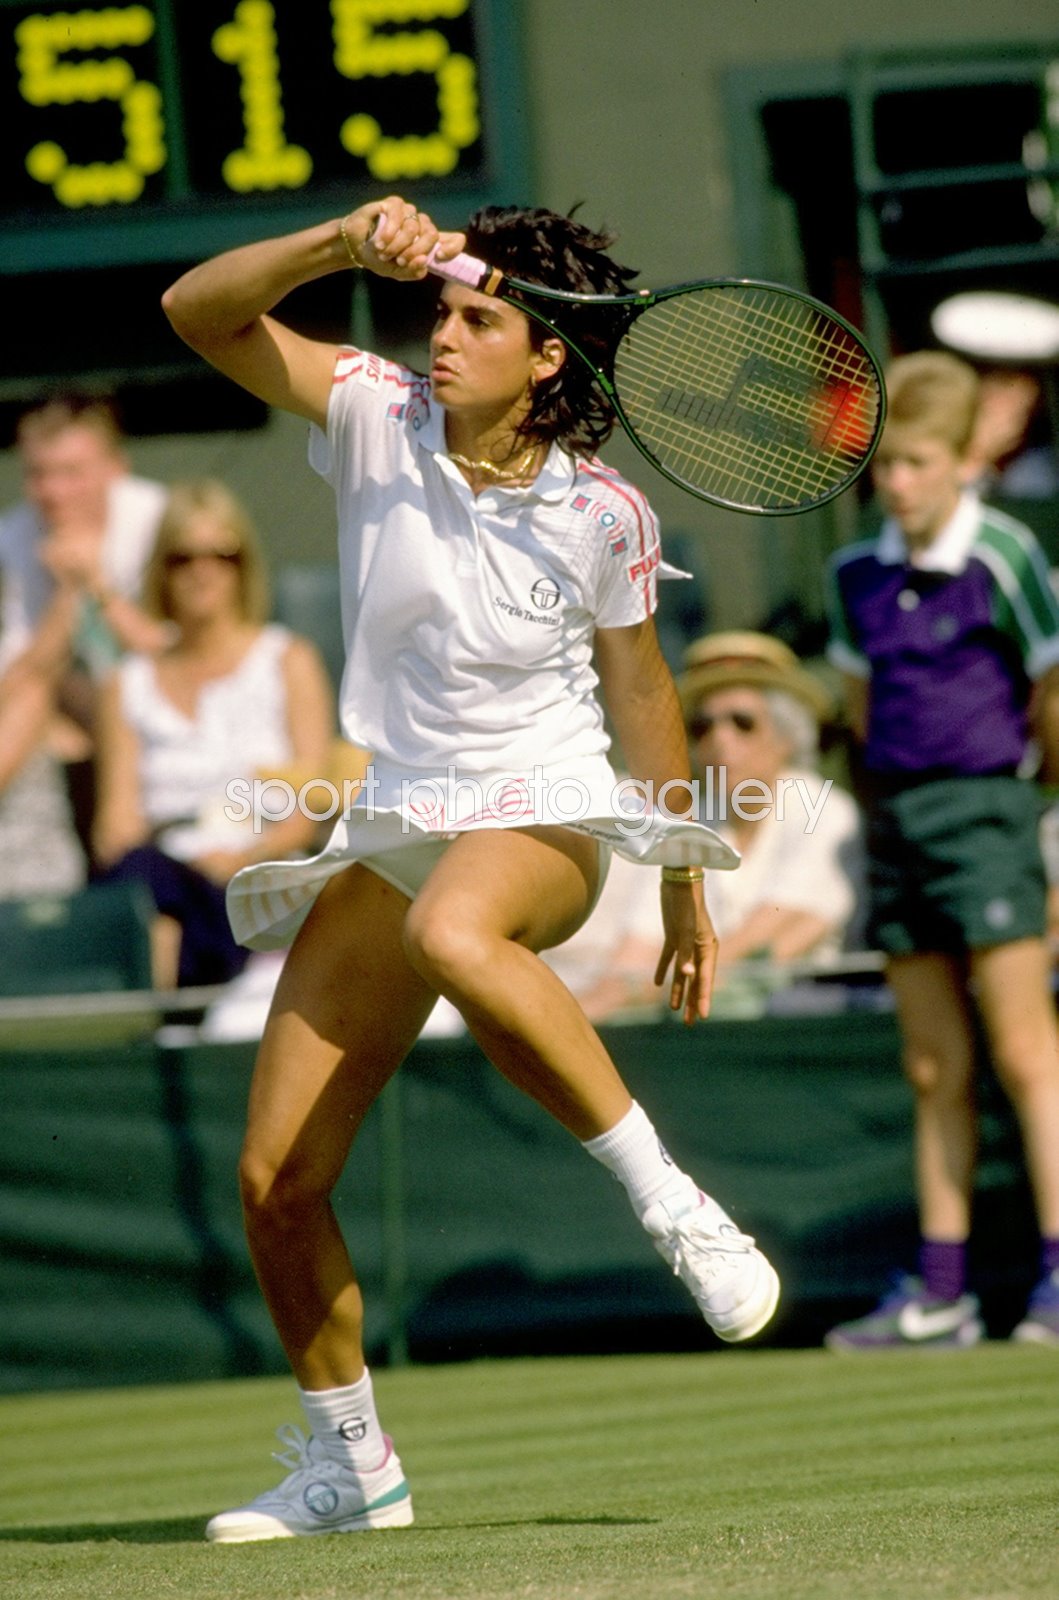 Gabriela Sabatini Argentina Wimbledon Tennis 19 Images Tennis Posters